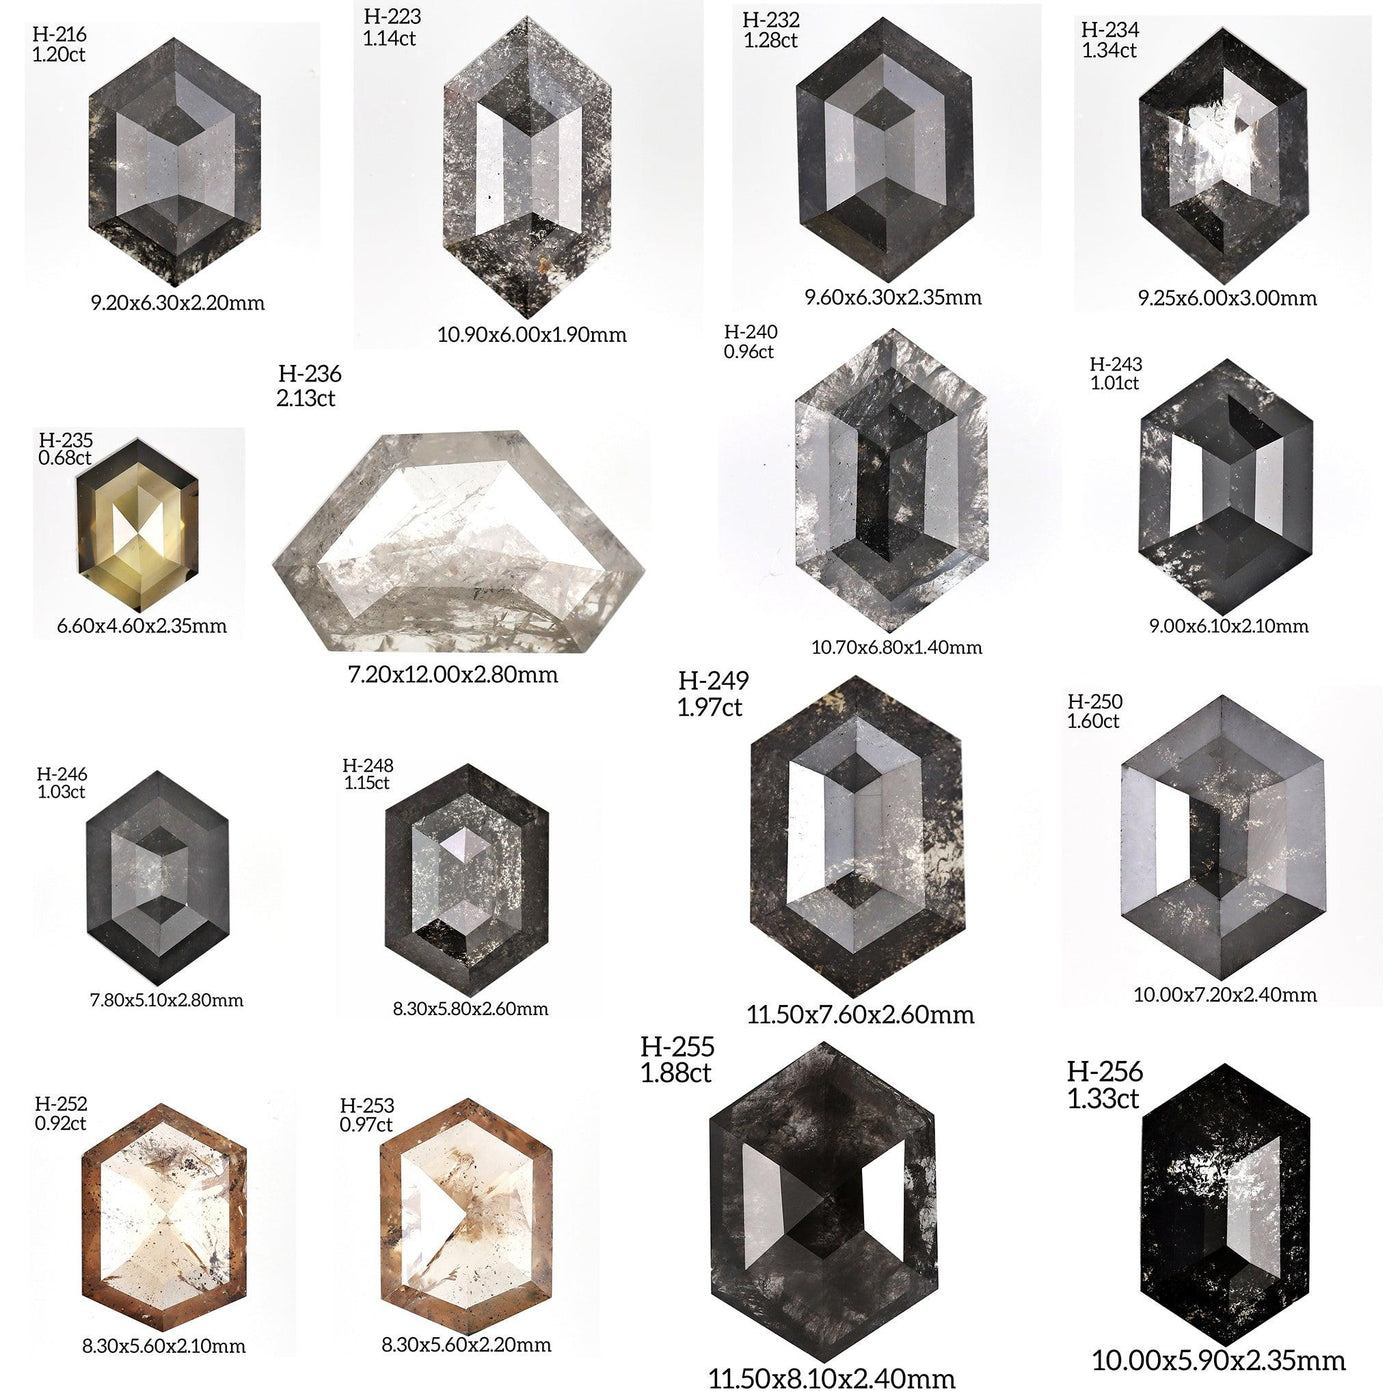 H263 - Salt and pepper hexagon diamond